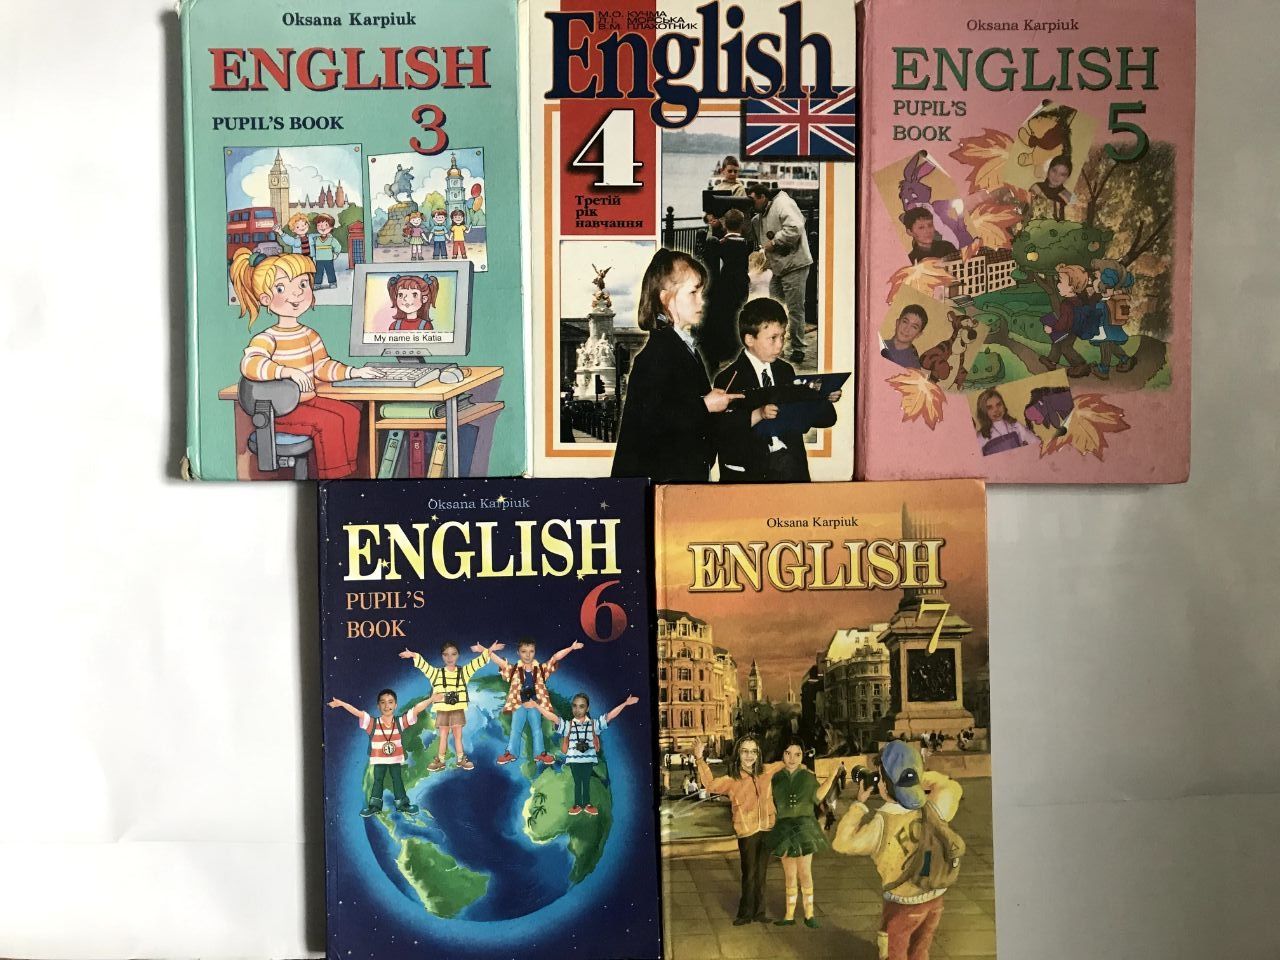 Підручники для вивчення англійської мови, книги